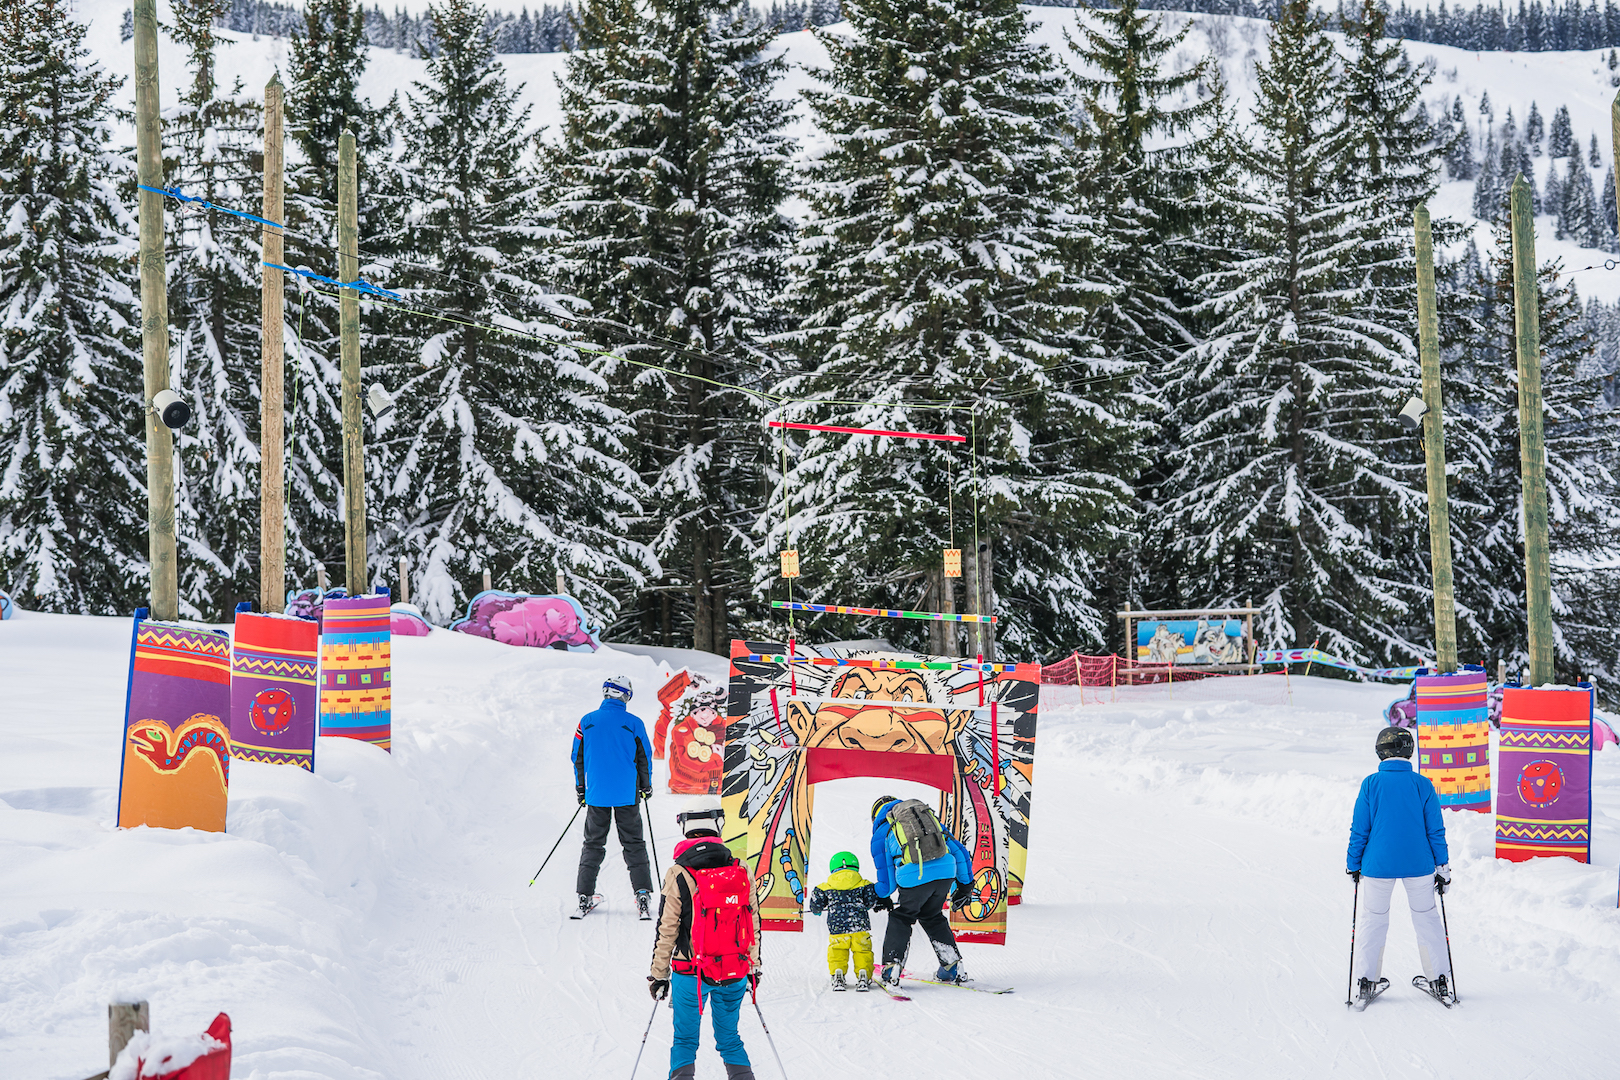 Famille en train de skier sur une piste aménagée pour les enfants avec décoration indiens